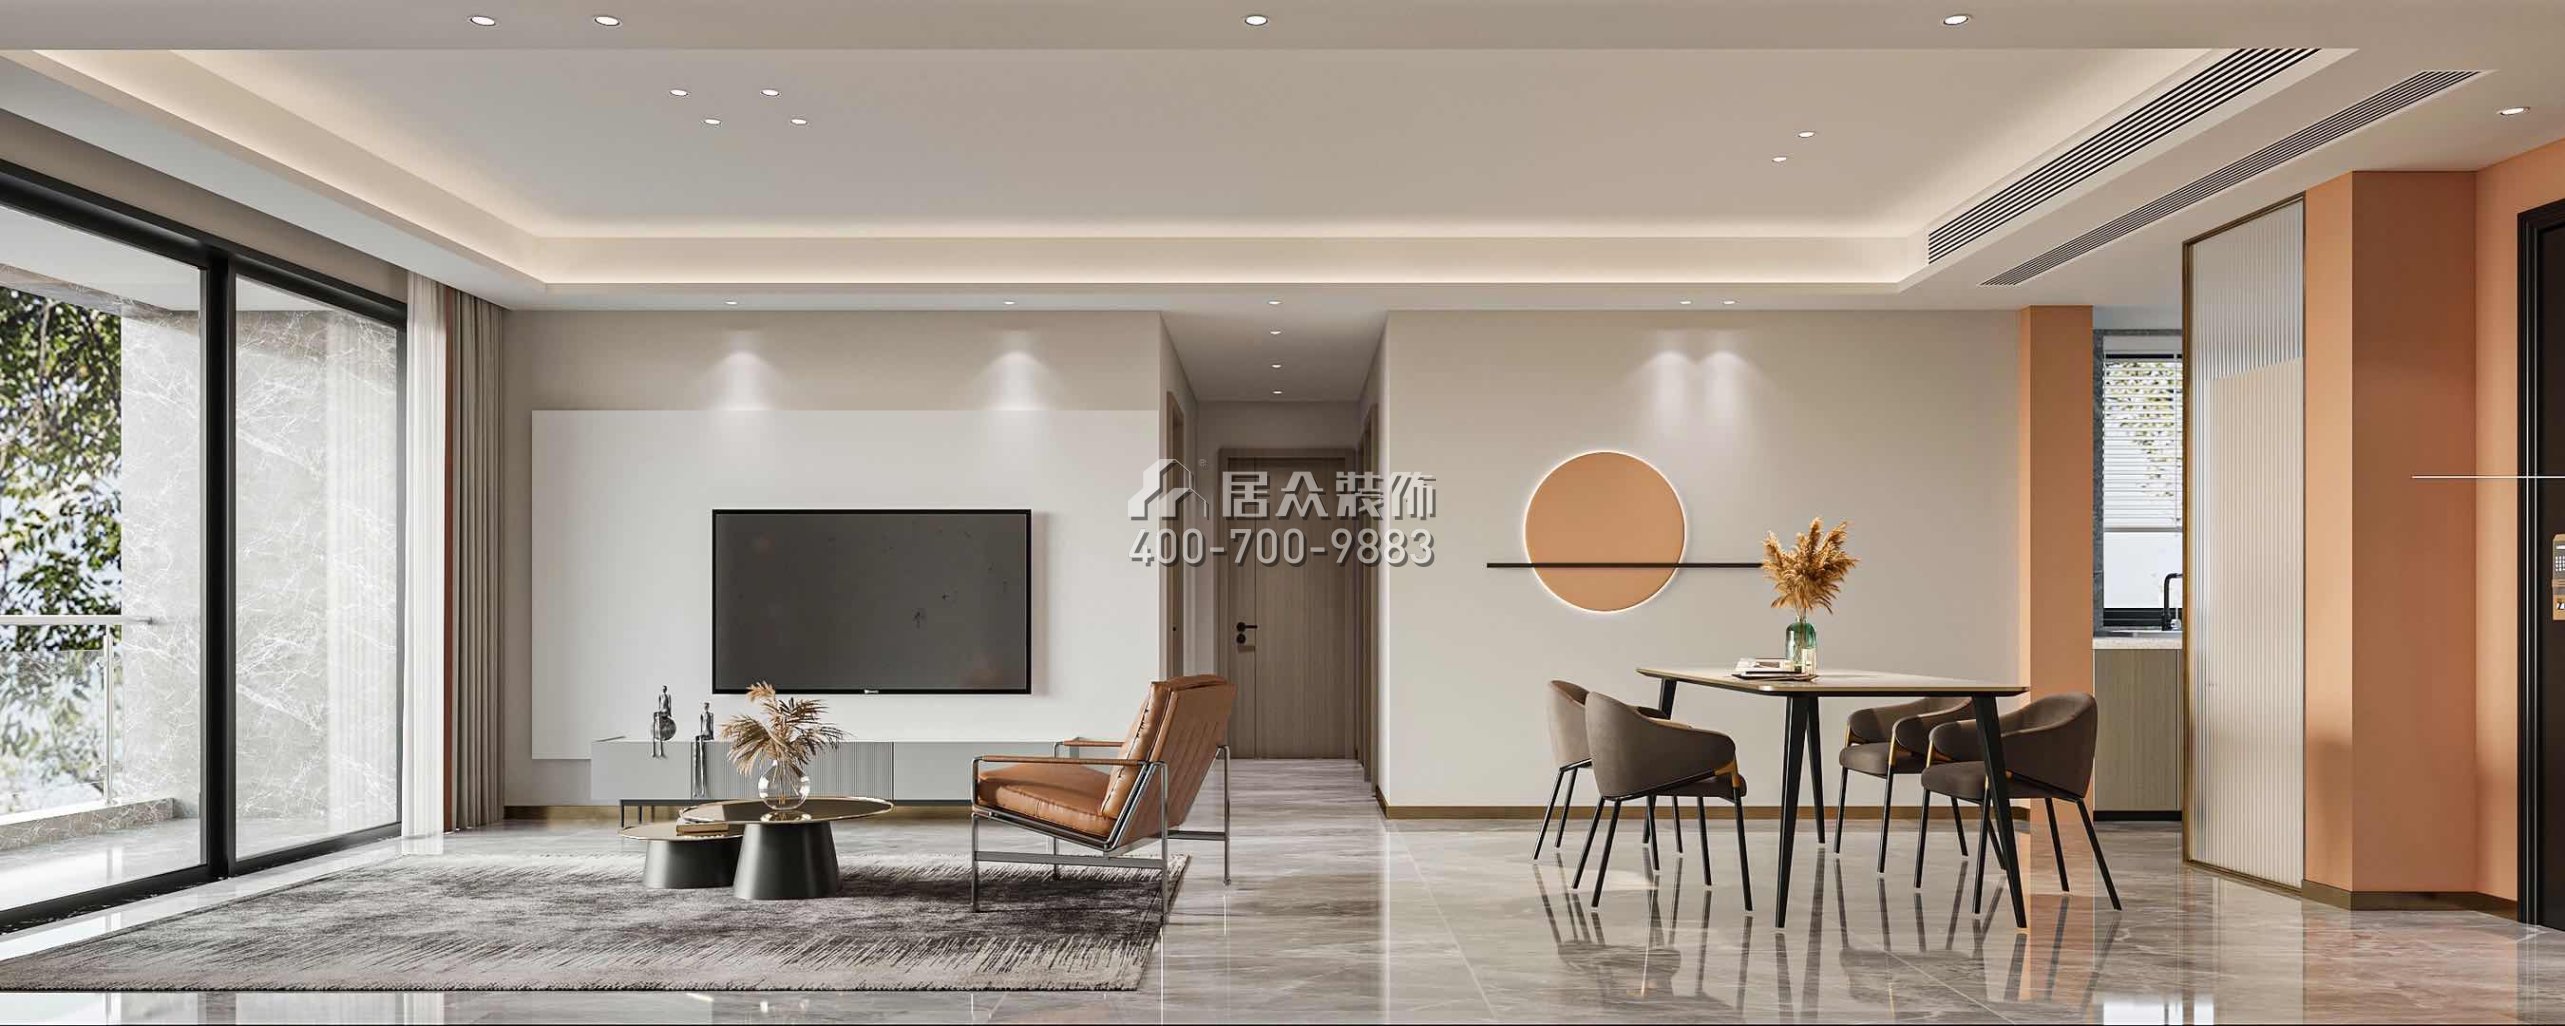 鸿荣源壹城中心120平方米现代简约风格平层户型客餐厅一体装修效果图